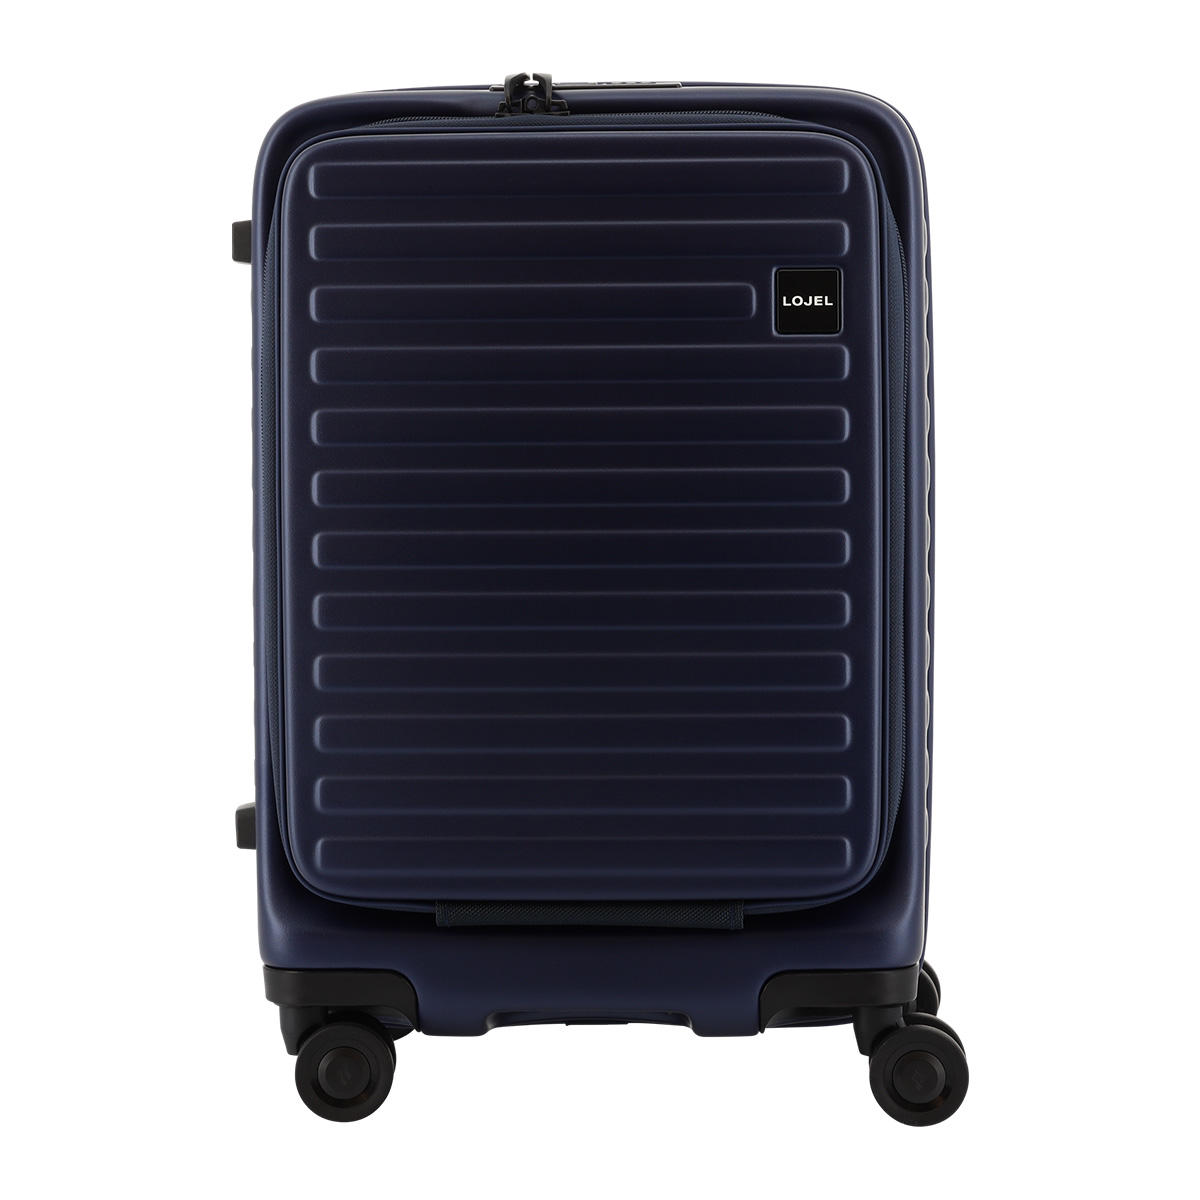 ロジェール スーツケース キューボ 機内持ち込み 37(42)L 48cm 3.4kg CUBO-REFRESH-S LOJEL キャリーケース  キャリーバッグ フロントオープン 拡張機能